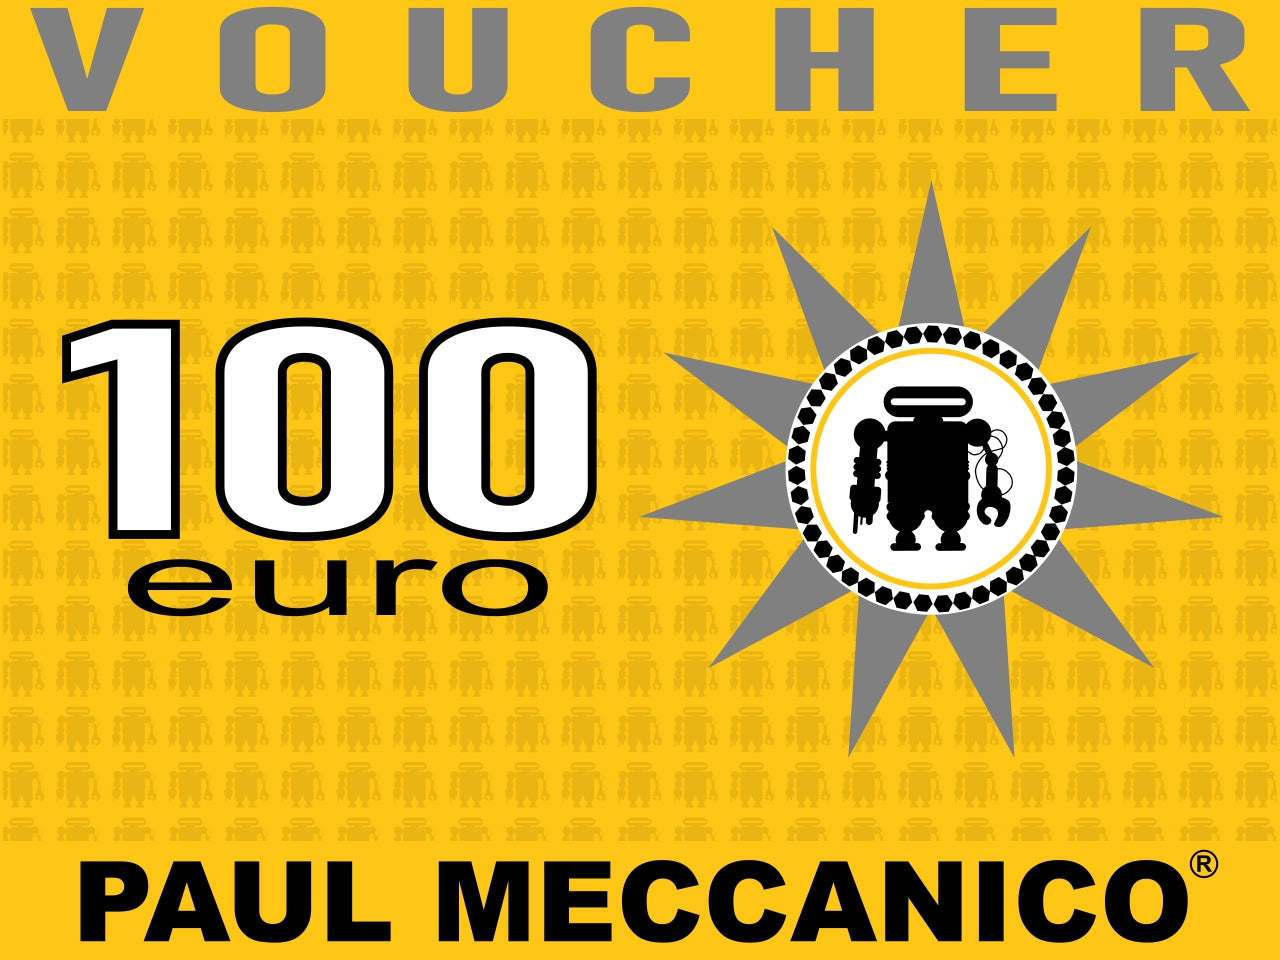 Paul Meccanico gift card €100 - Gift Cards Paul Meccanico